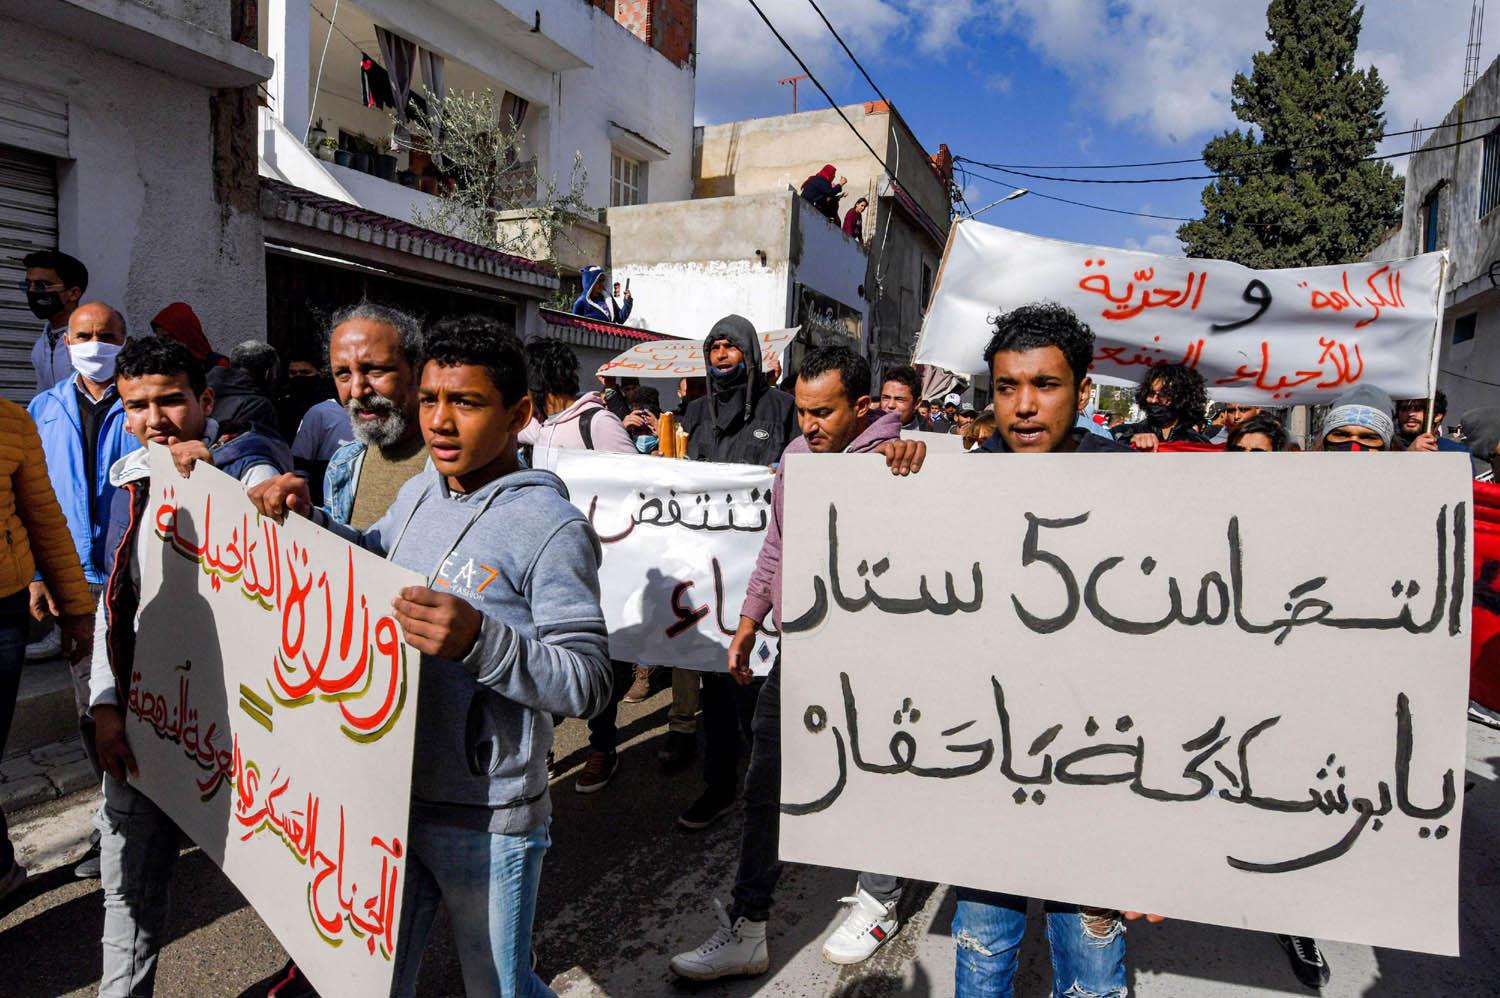 تظاهرة في حي التضامن الفقير في تونس